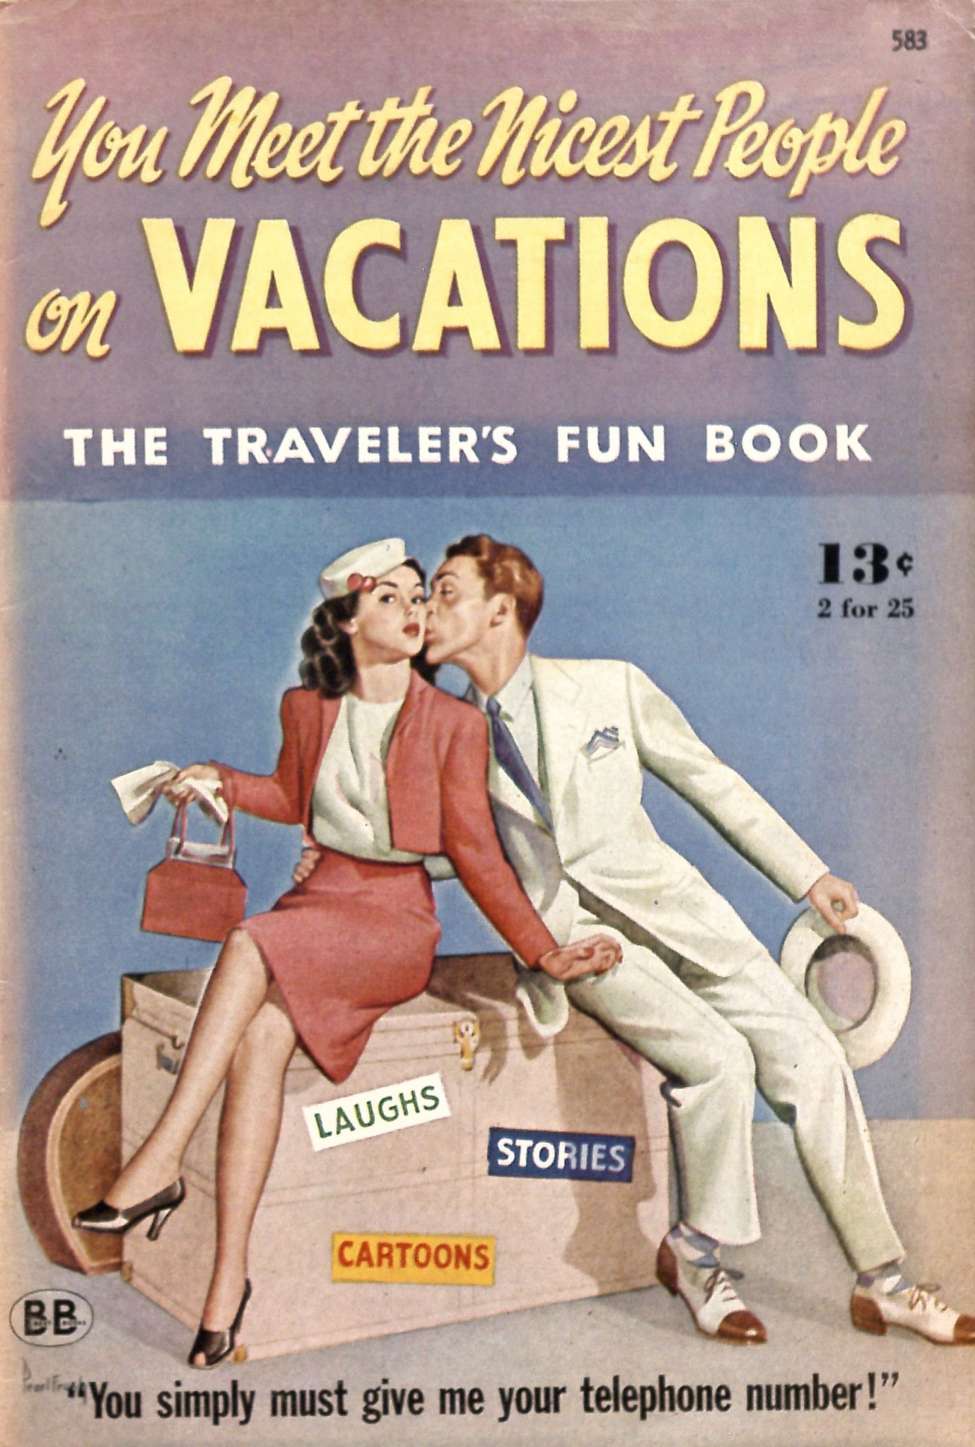 the vacation book john marrs